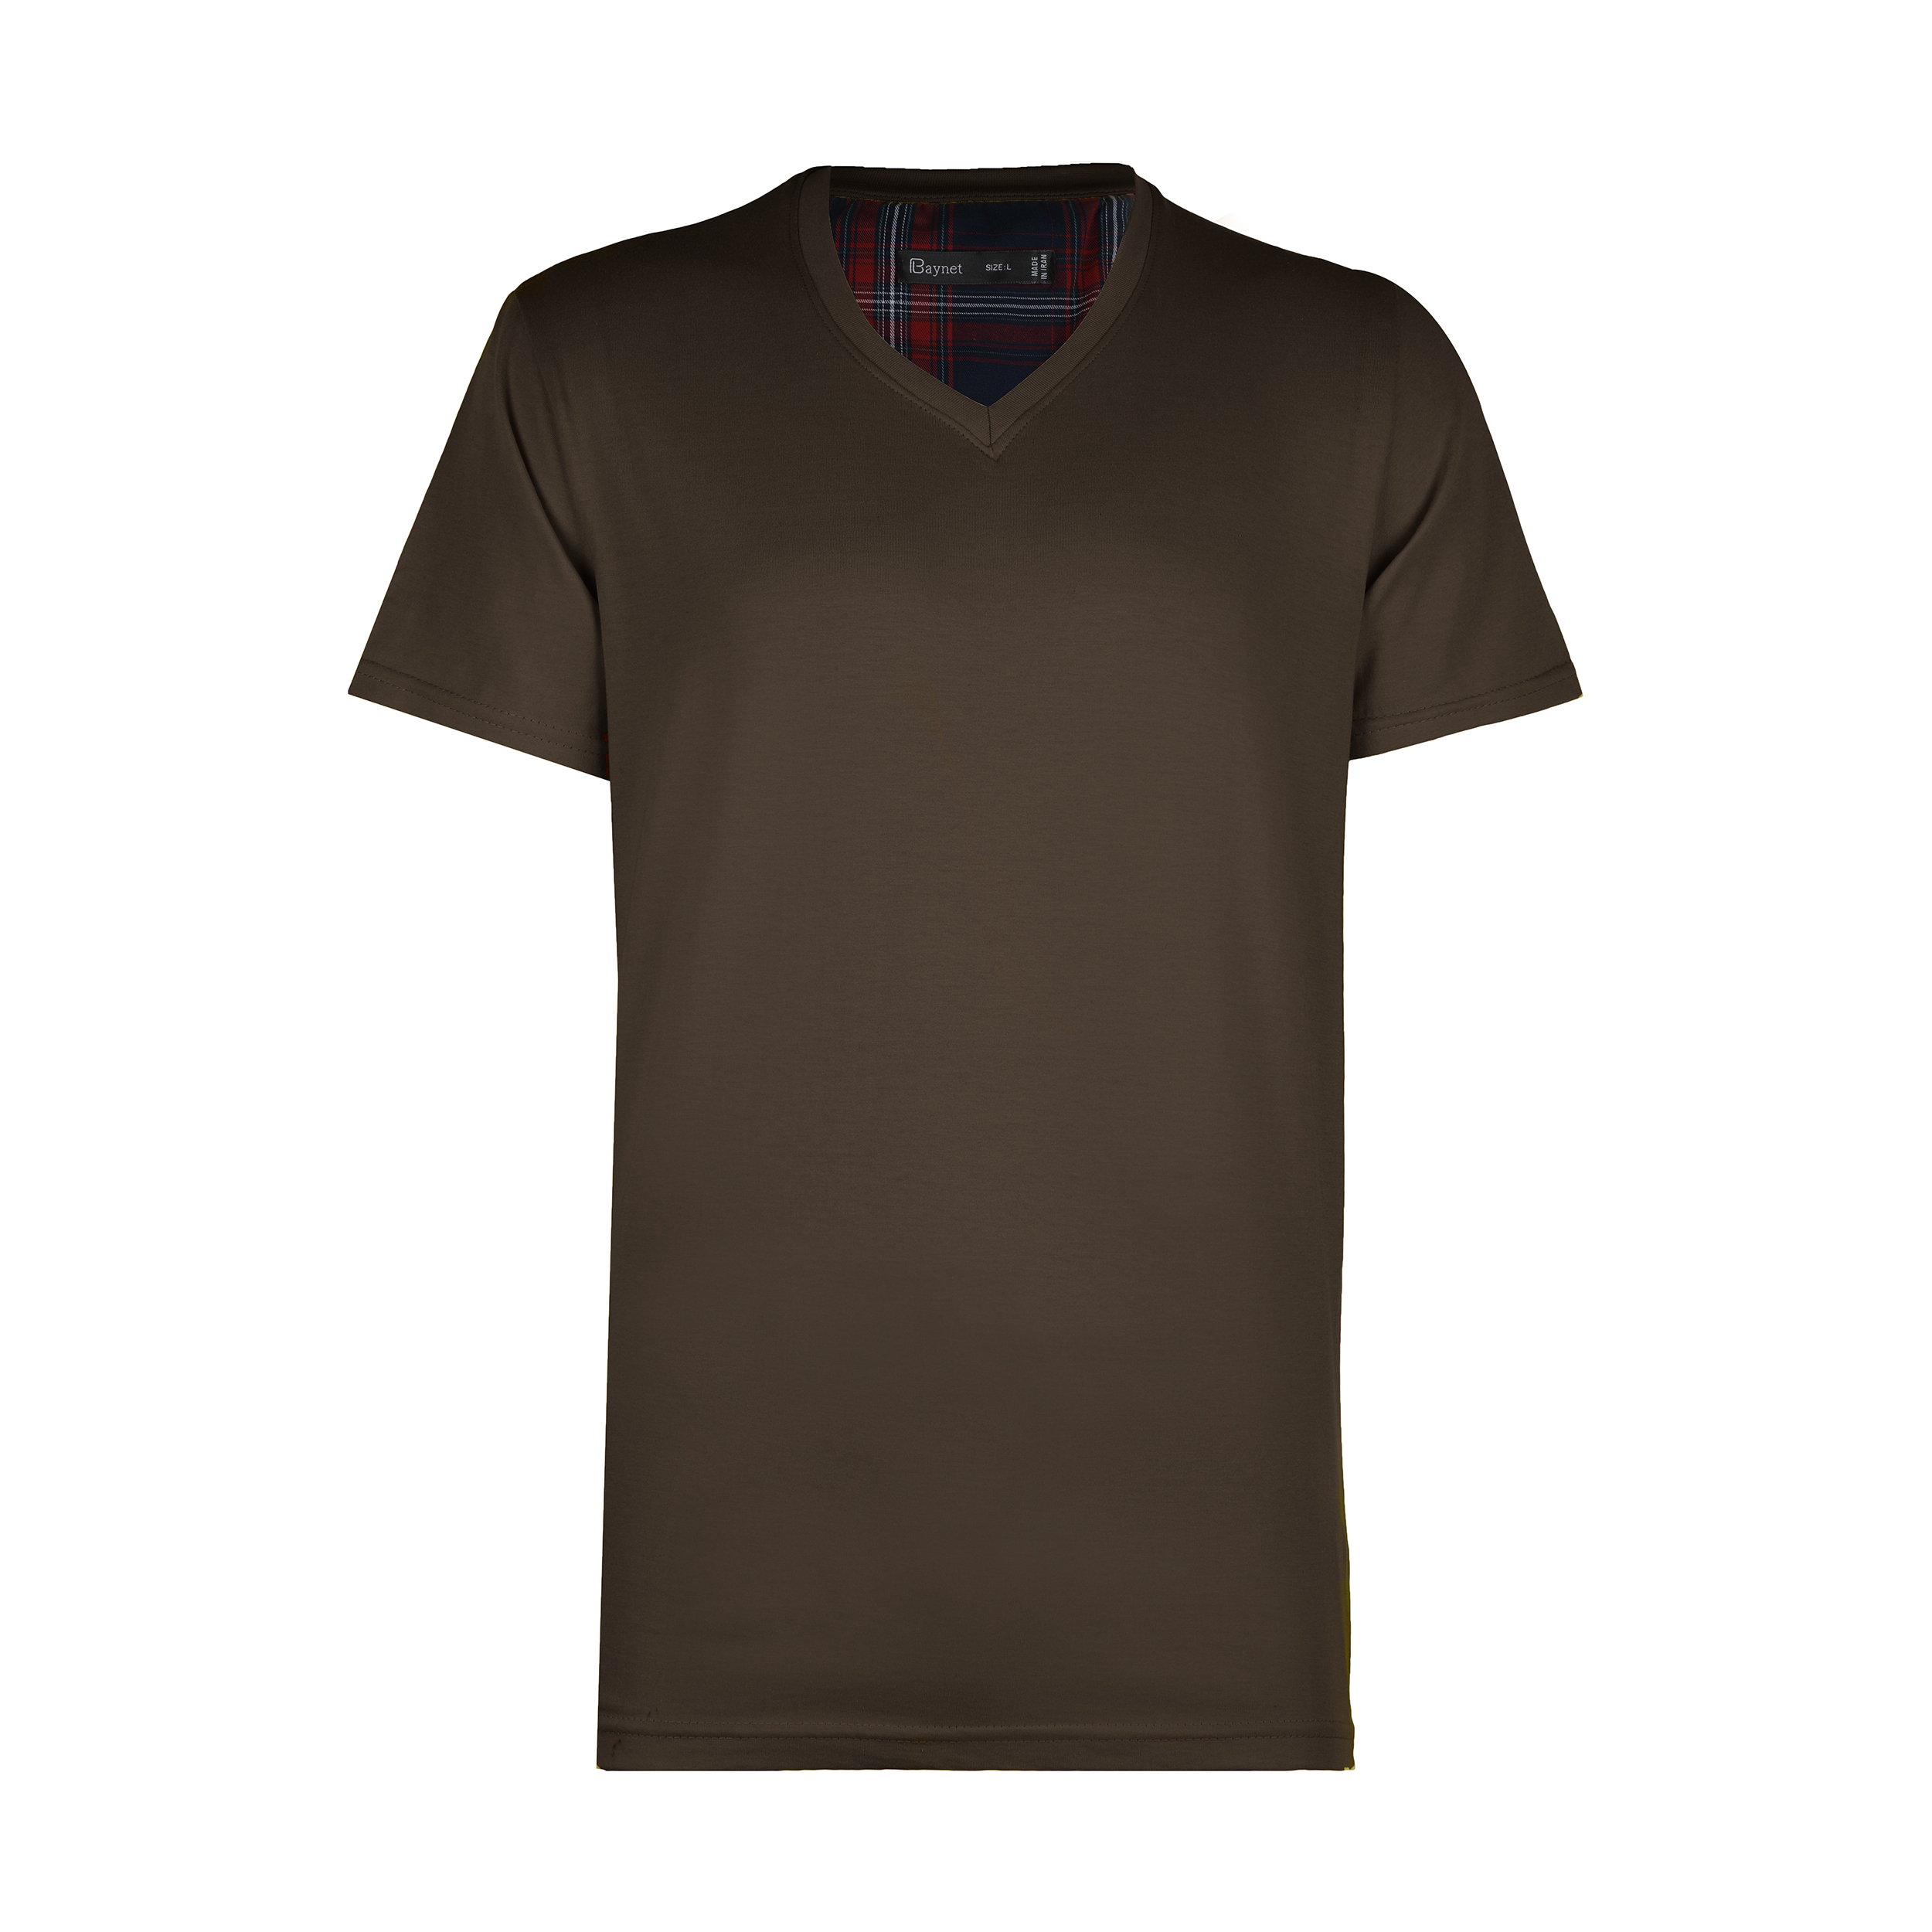 نقد و بررسی تی شرت مردانه باینت مدل 2261485-36 توسط خریداران